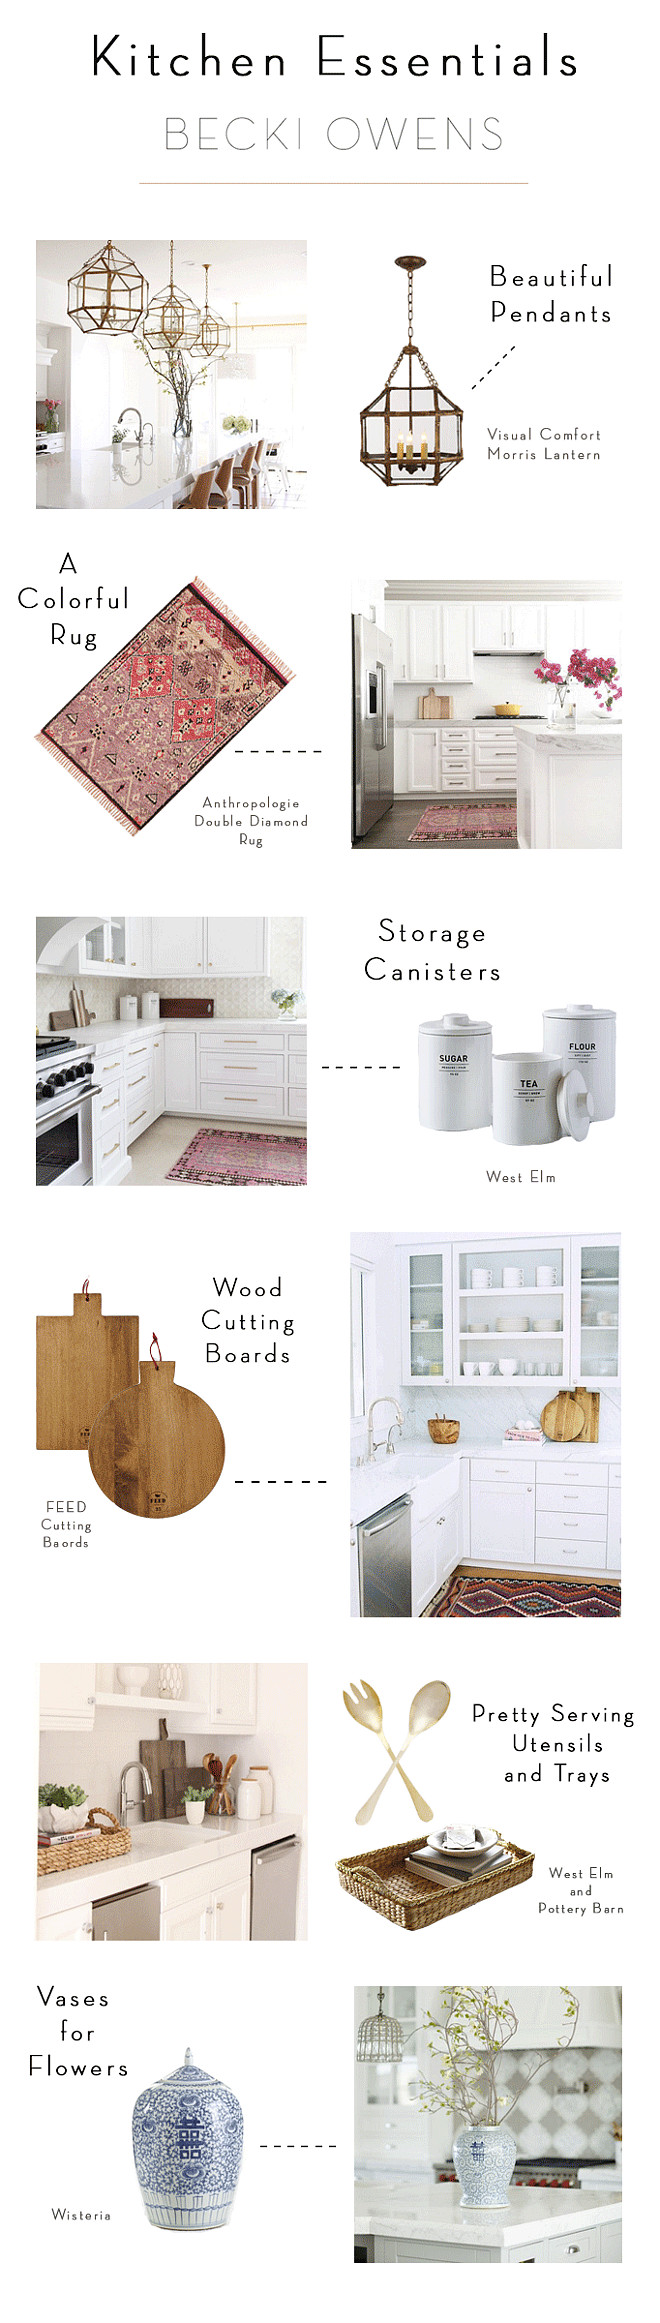 Kitchen Essentials by Becki Owens. Kitchen Guide. Kitchen Tips. #Kitchen #Essentials #Guide #DesignerTips #InteriordesignTips Becki Owens.